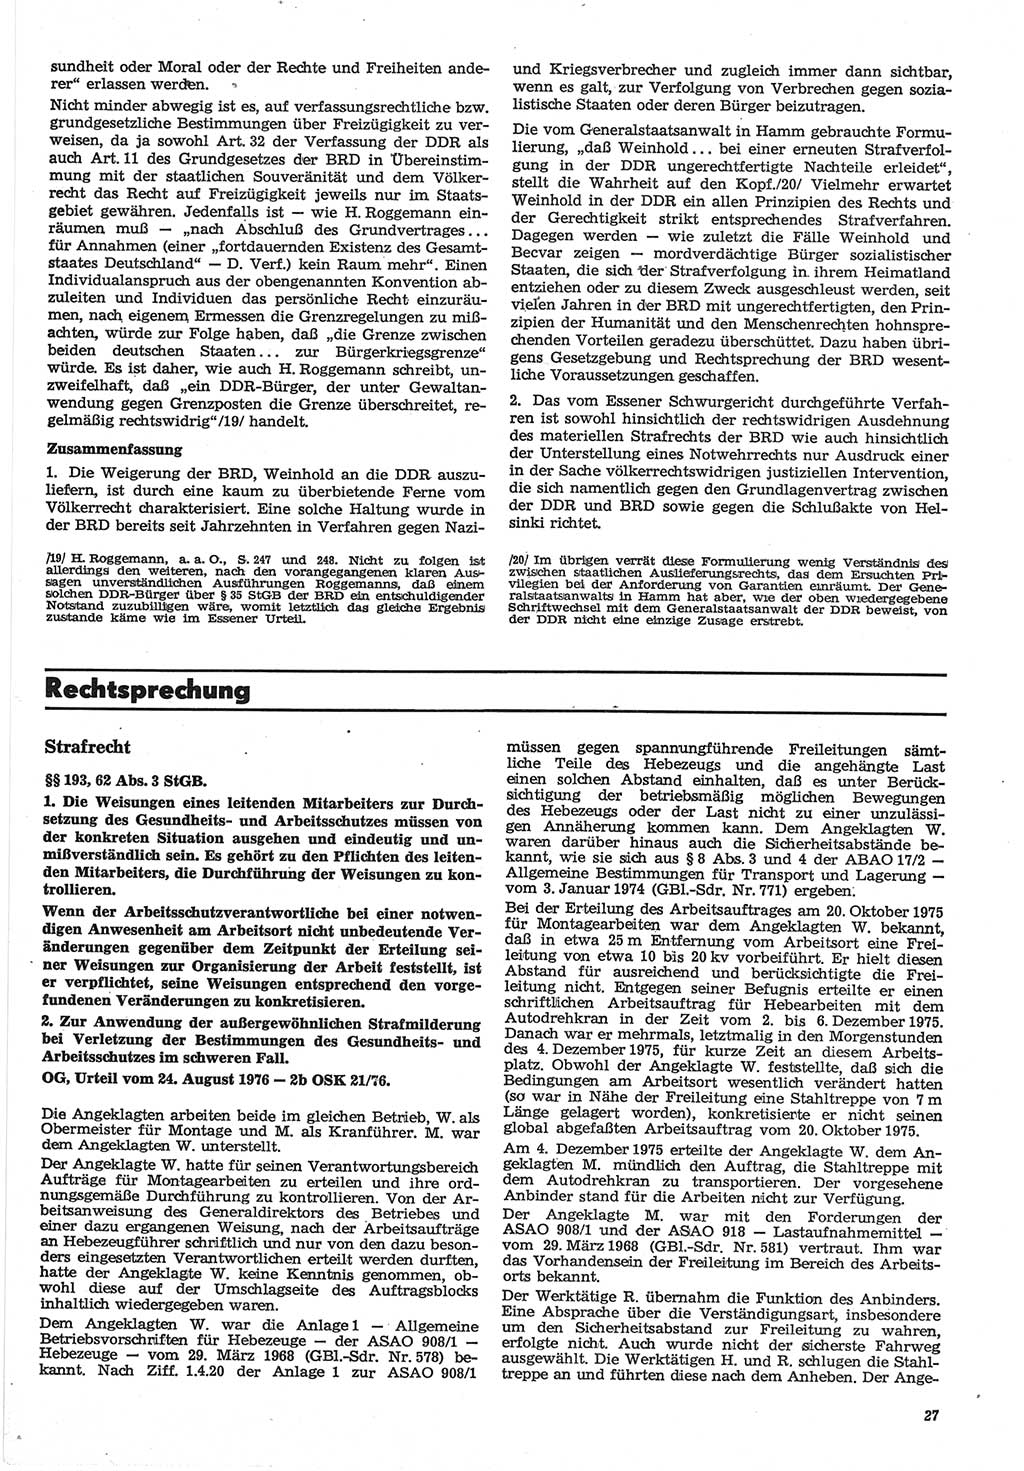 Neue Justiz (NJ), Zeitschrift für Recht und Rechtswissenschaft-Zeitschrift, sozialistisches Recht und Gesetzlichkeit, 31. Jahrgang 1977, Seite 27 (NJ DDR 1977, S. 27)